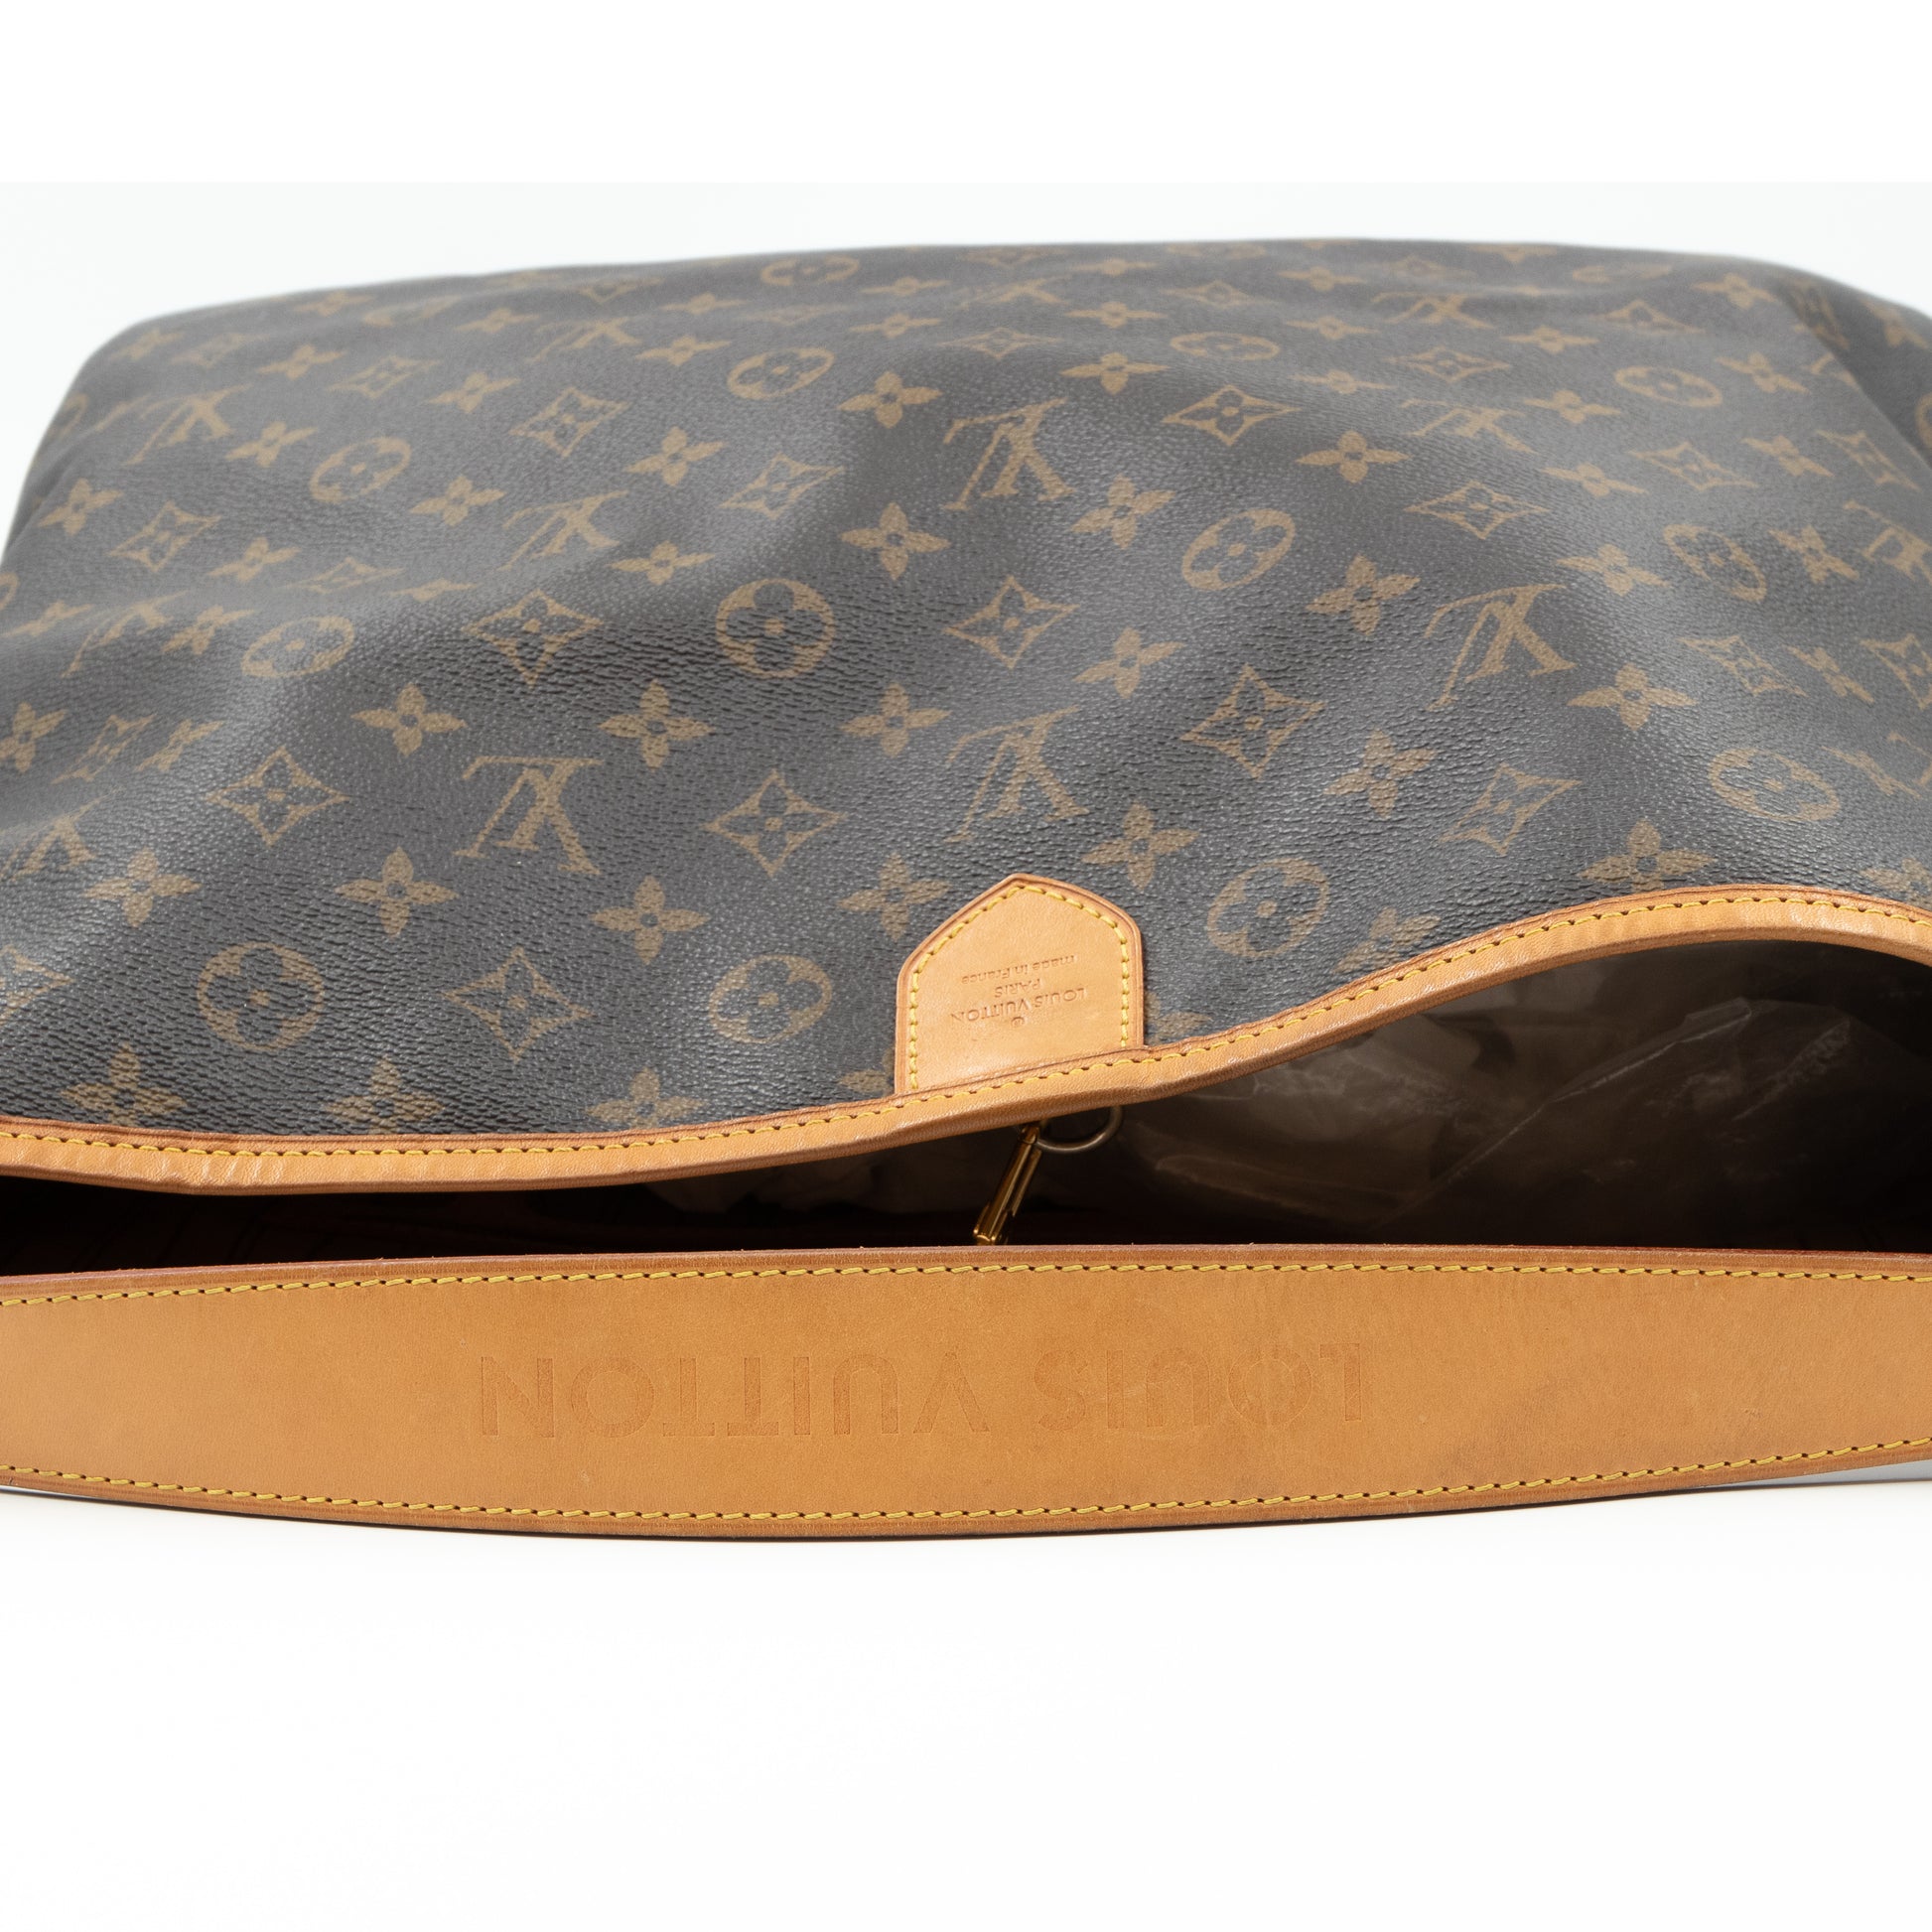 Louis Vuitton, Bags, Louis Vuitton Monogram Delightful Mm Bag